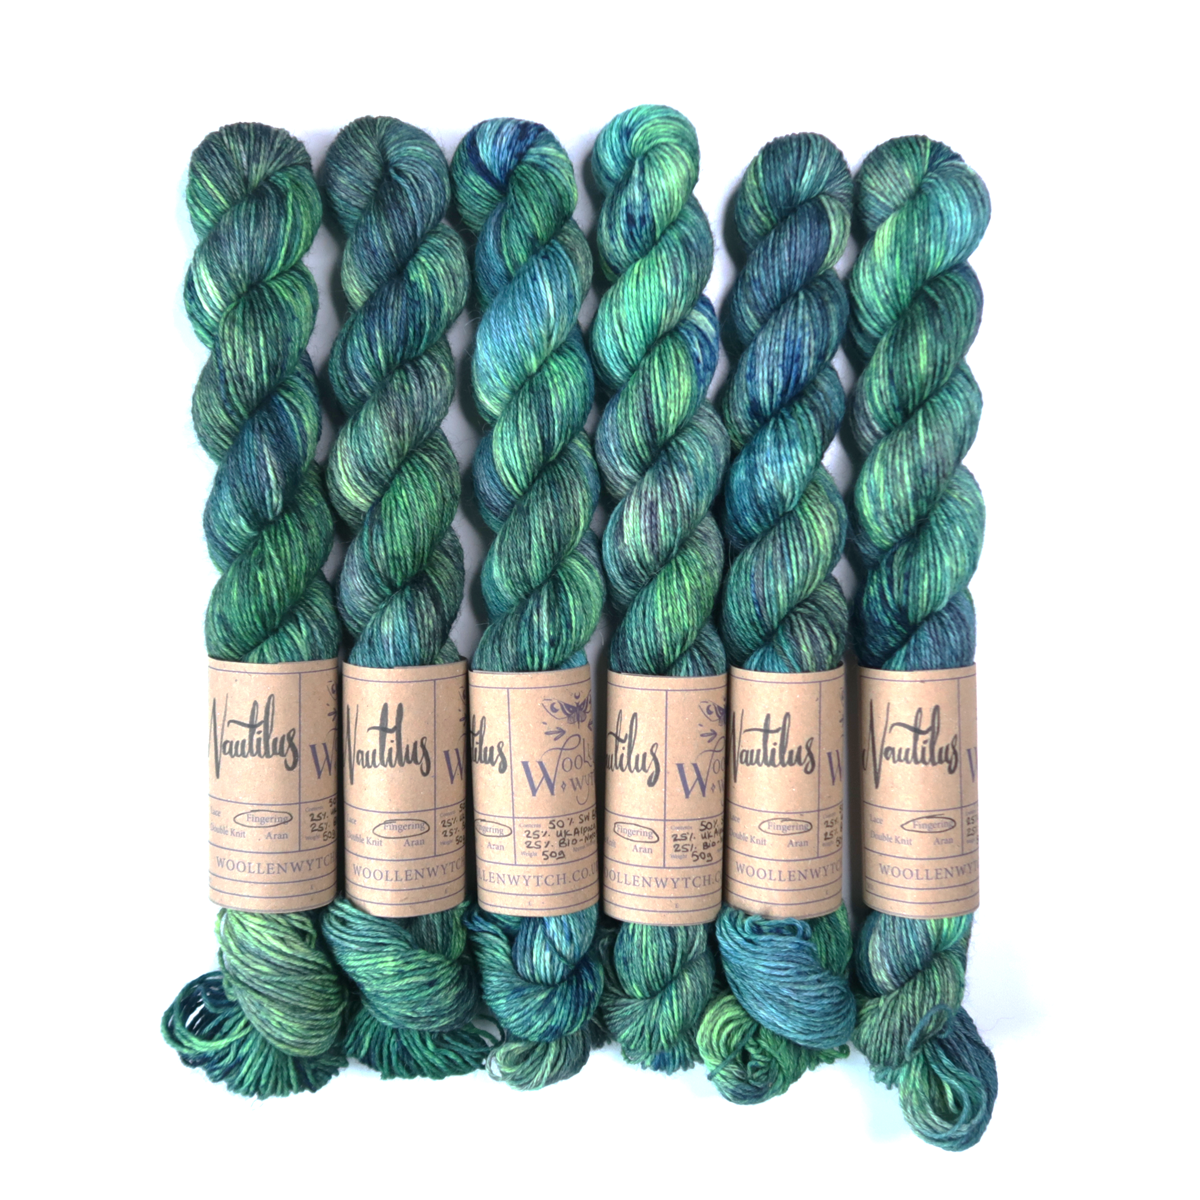 Nautilus hand dyed sock yarn on BFL, Alpaca and Bio-nylon using British wool- blue green yarn by Woollen Wytch Bristol